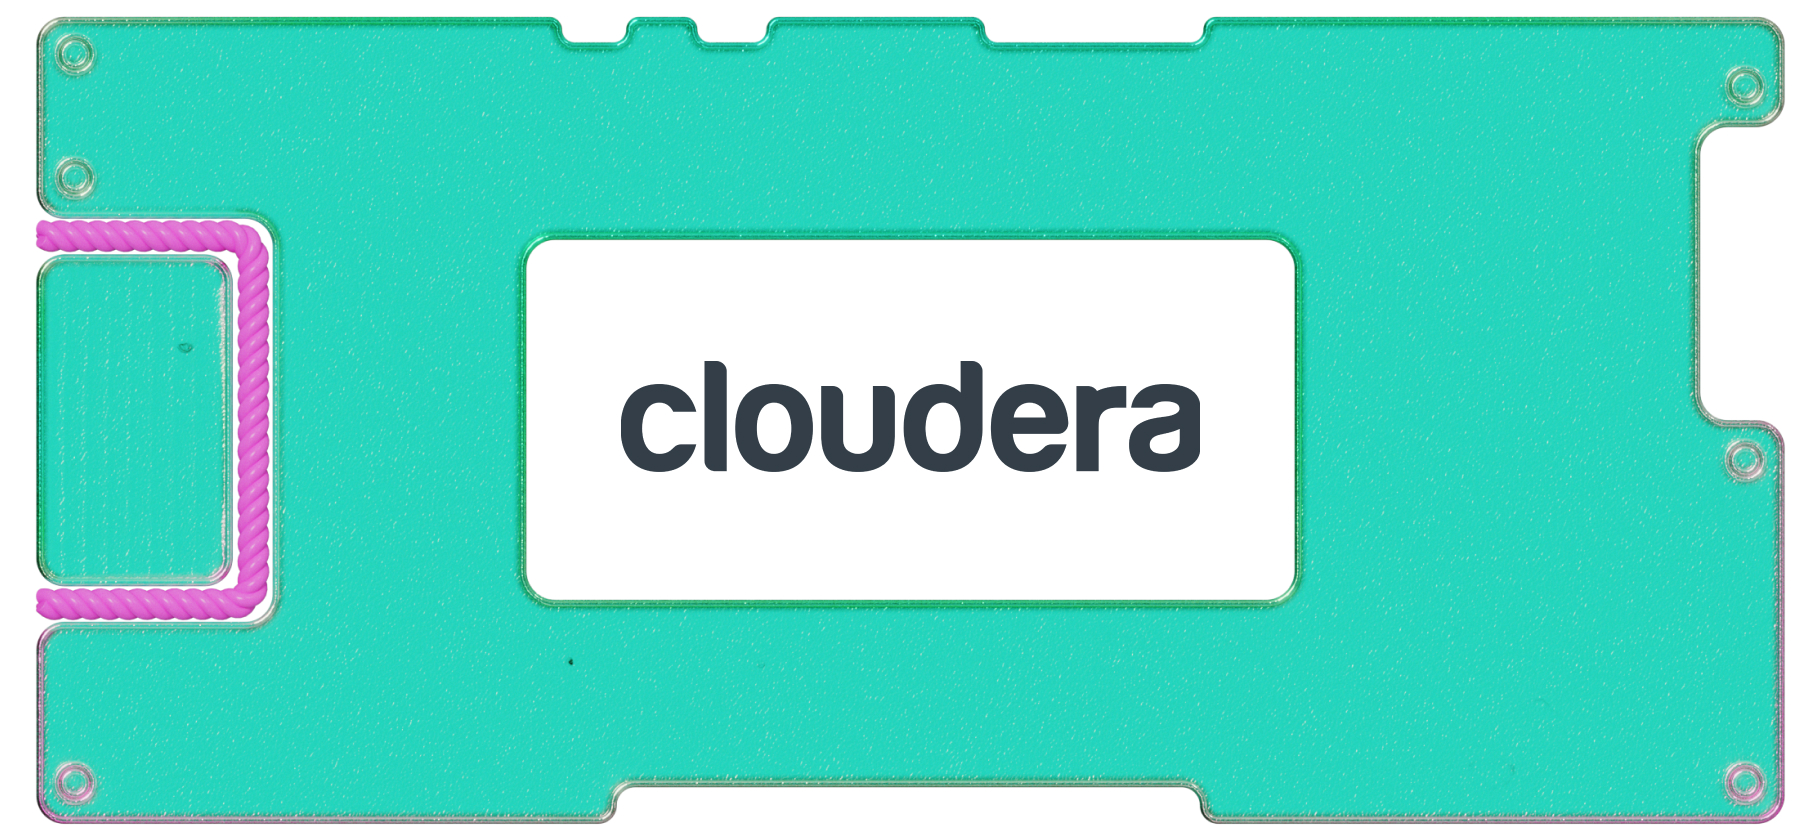 Инвестидея: Cloudera, потому что большие данные недооценены